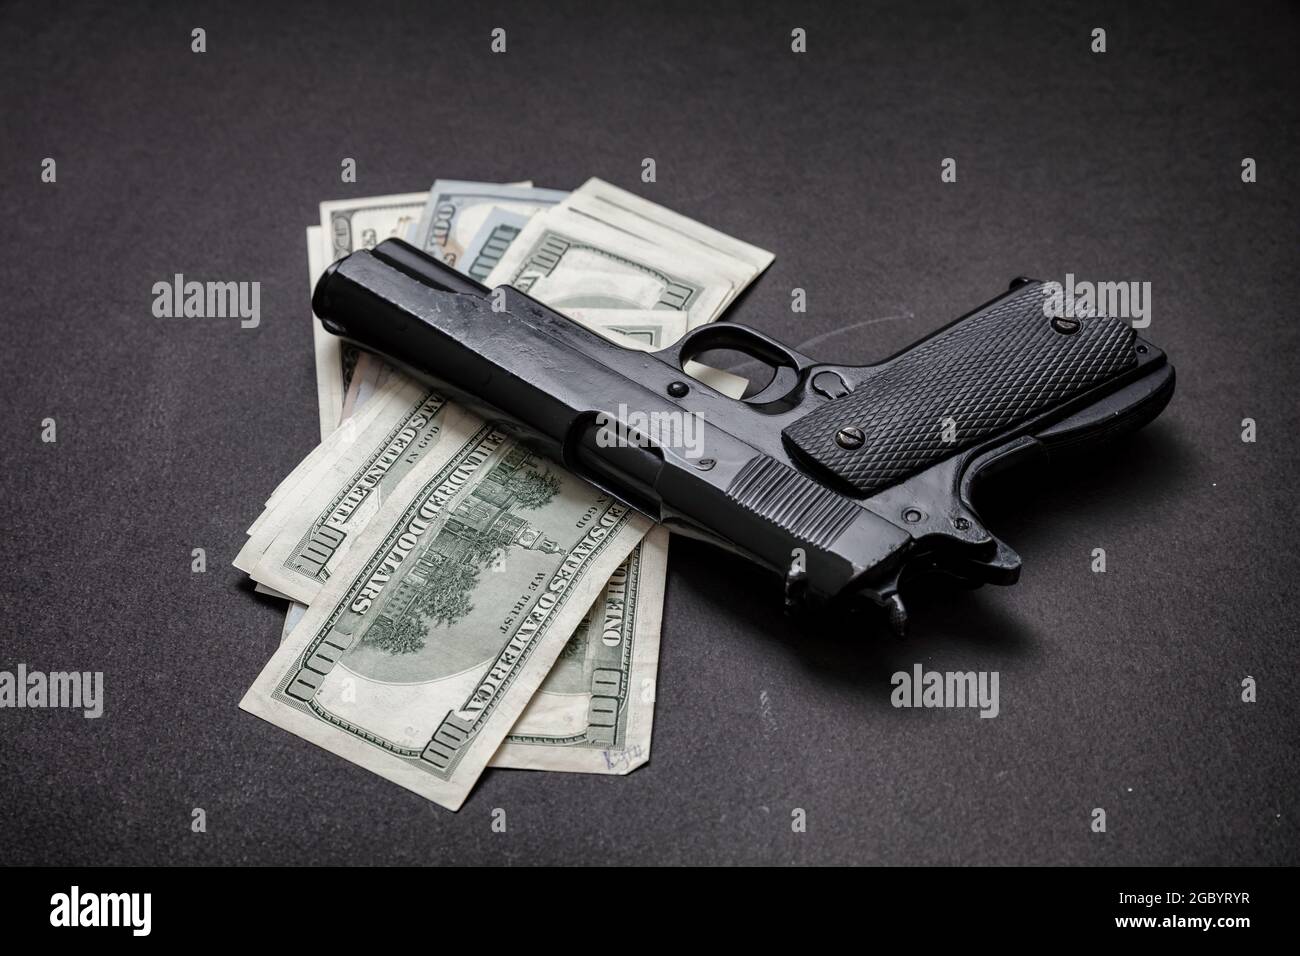 Crime concept, pistolet pistolet 9 mm et billets en dollars américains sur fond noir. L'argent criminel, la mafia et le concept de corruption, Banque D'Images